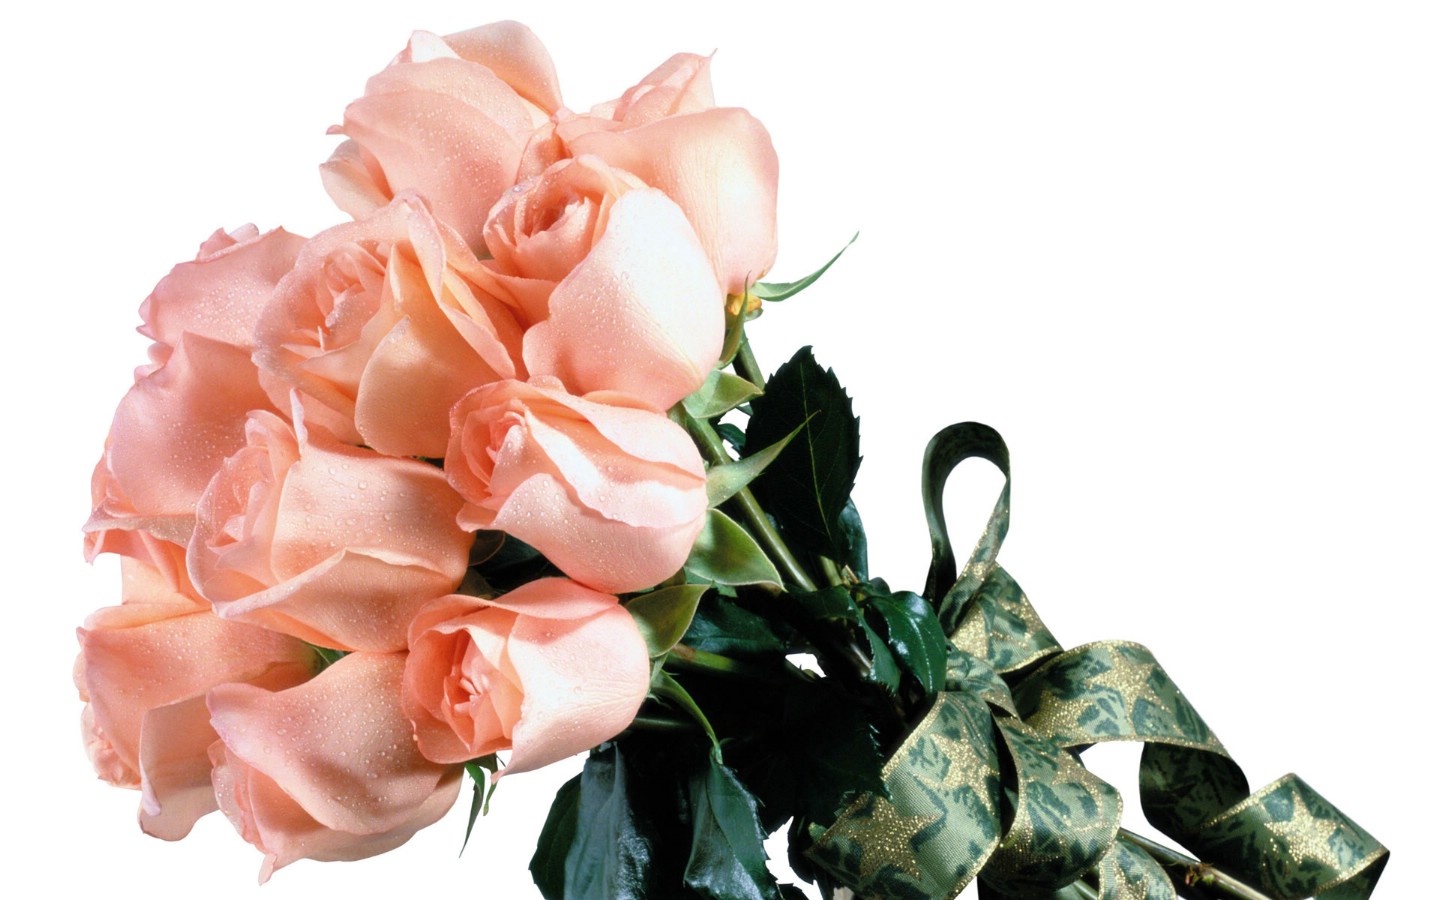 壁纸1440x900玫瑰写真 3 12壁纸 玫瑰写真壁纸 玫瑰写真图片 玫瑰写真素材 花卉壁纸 花卉图库 花卉图片素材桌面壁纸